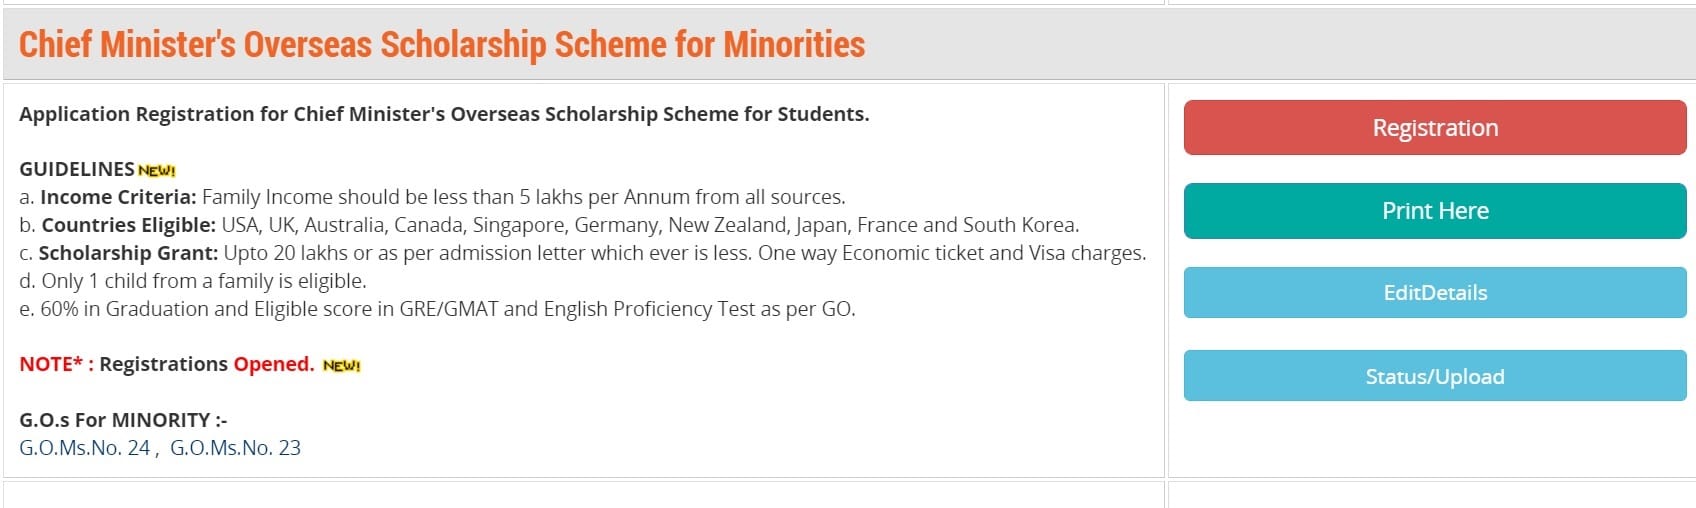 Apply Online for Telangana CM Overseas Scholarship Scheme for Minorities at telanganaepass.cgg